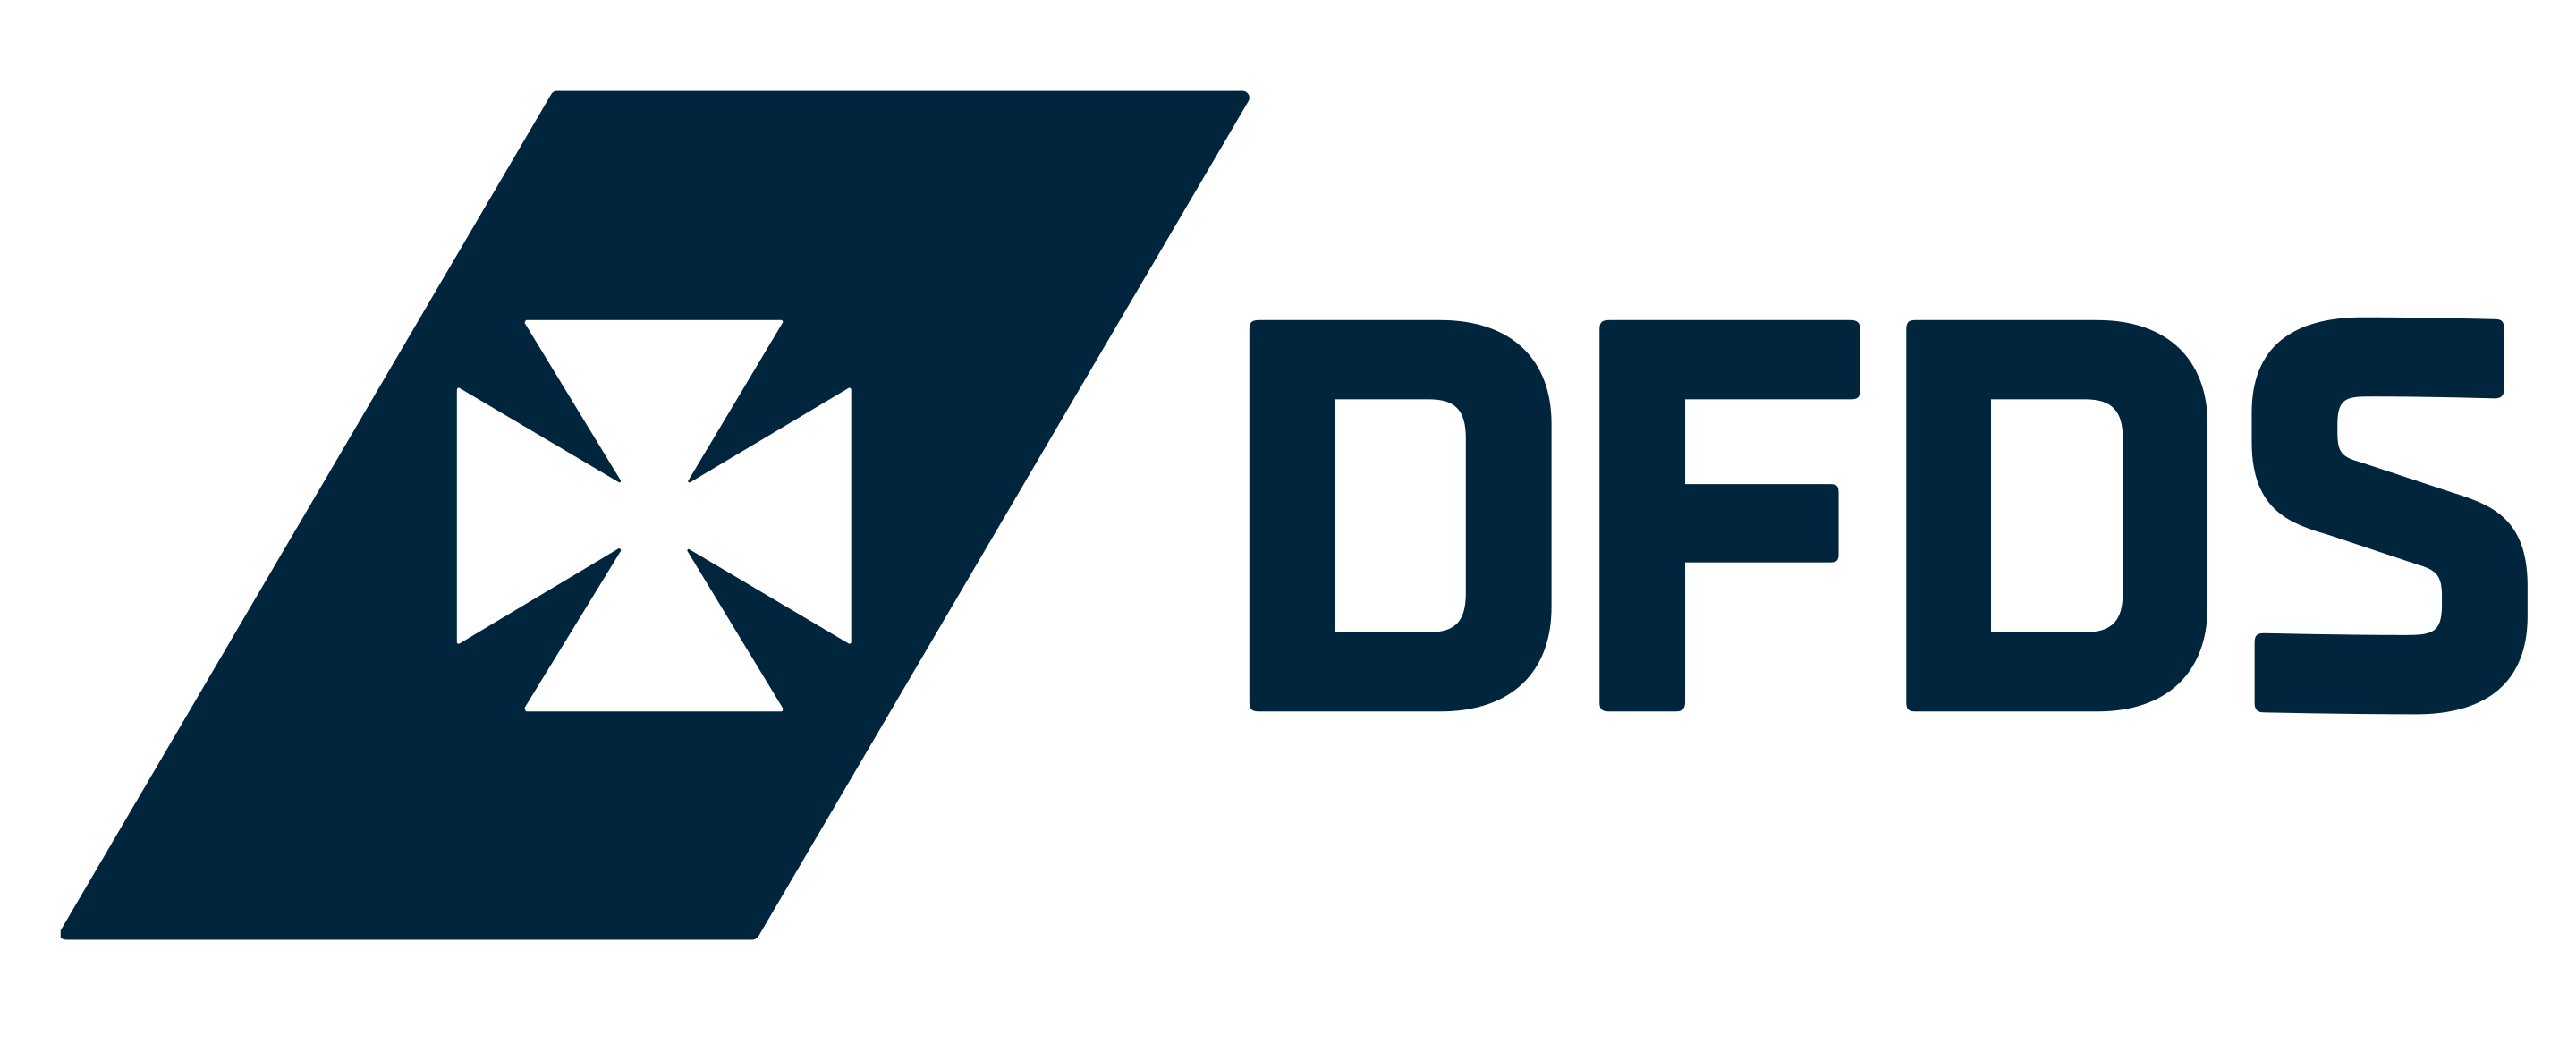 Logotipo de DFDS Seaways